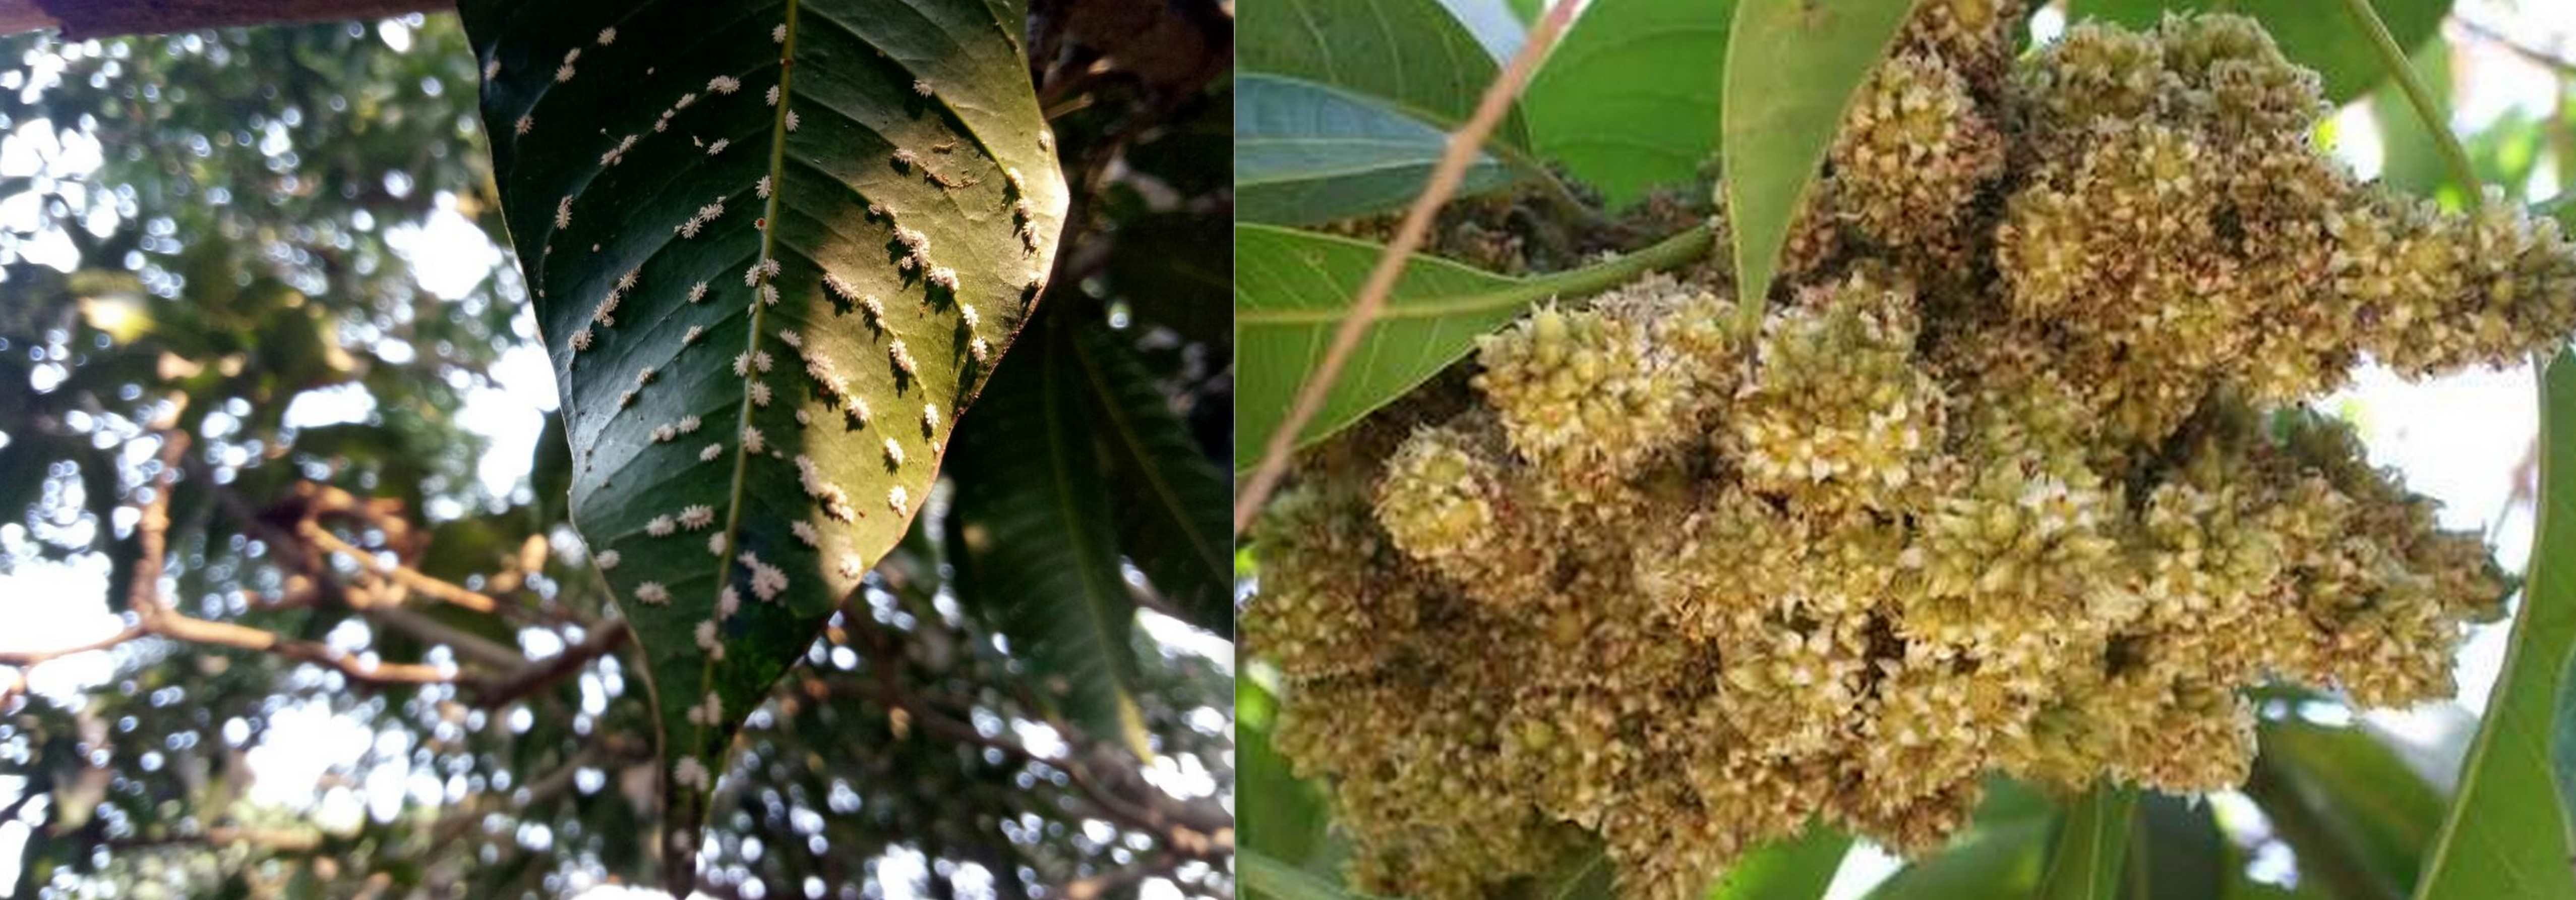 आम के बाग में गुम्मा रोग व स्केल कीट का प्रकोप, समय से प्रबंधन न करने पर घट सकता उत्पादन